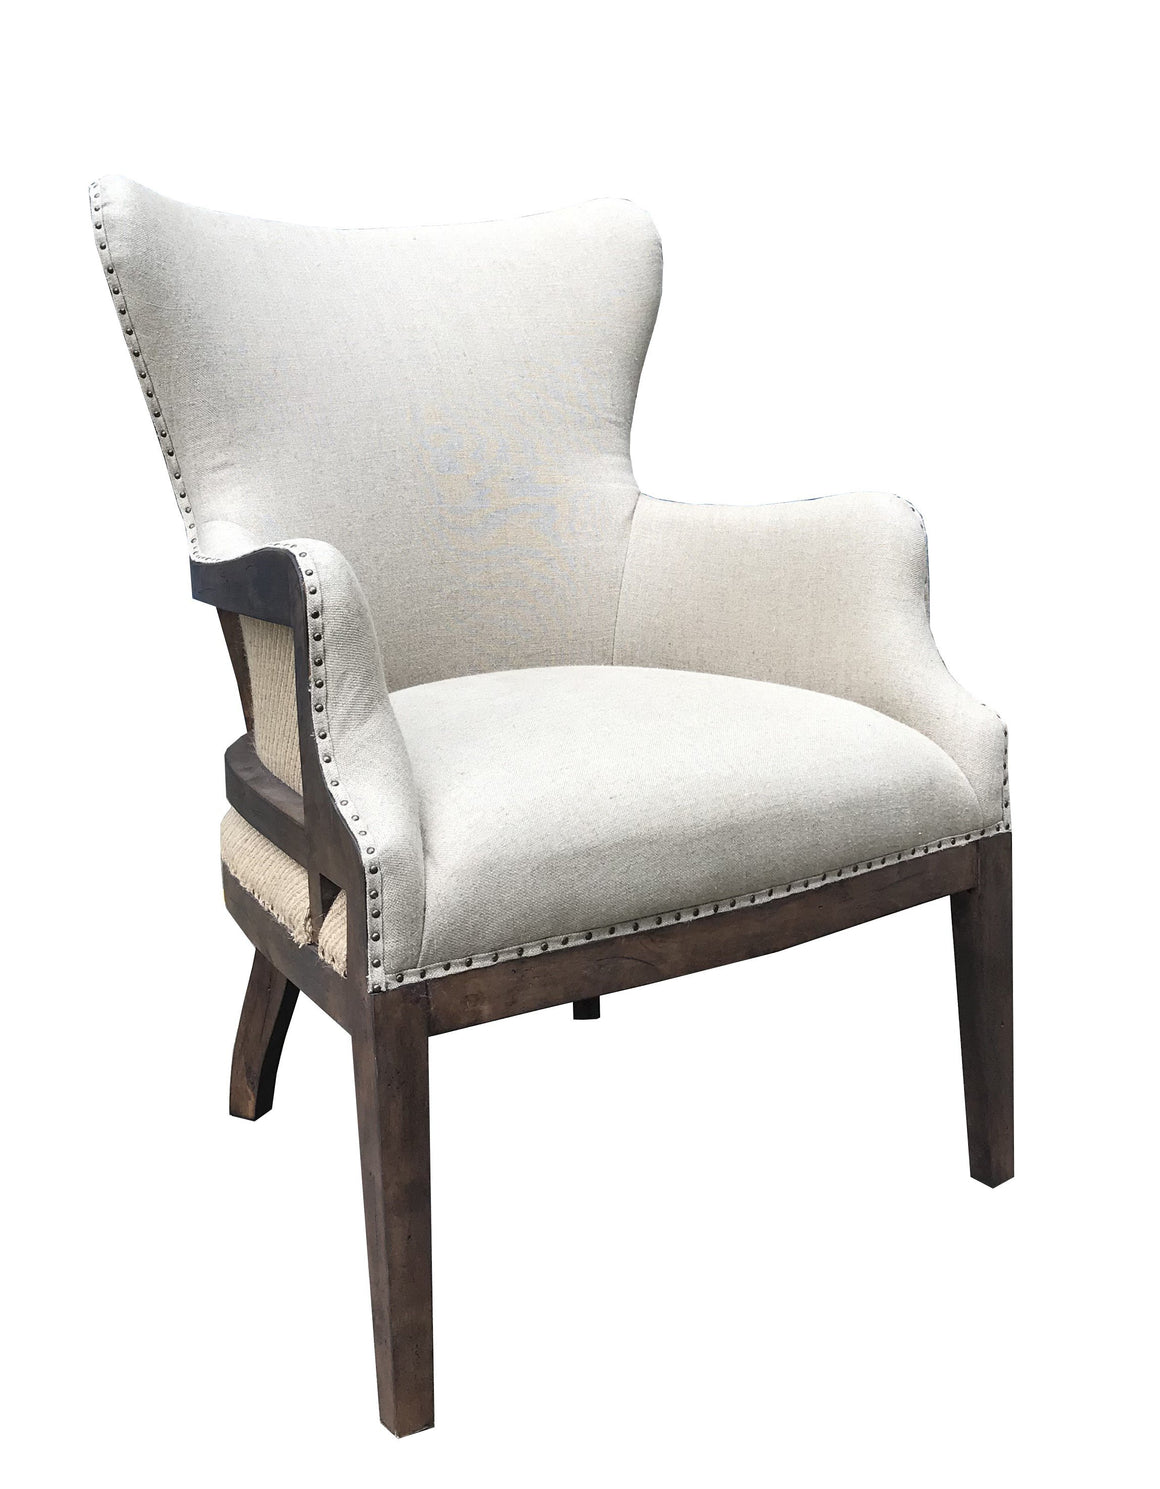 Alexander Deconstructed Arm Chair - Linen + Chestnut - Classic Carolina Home